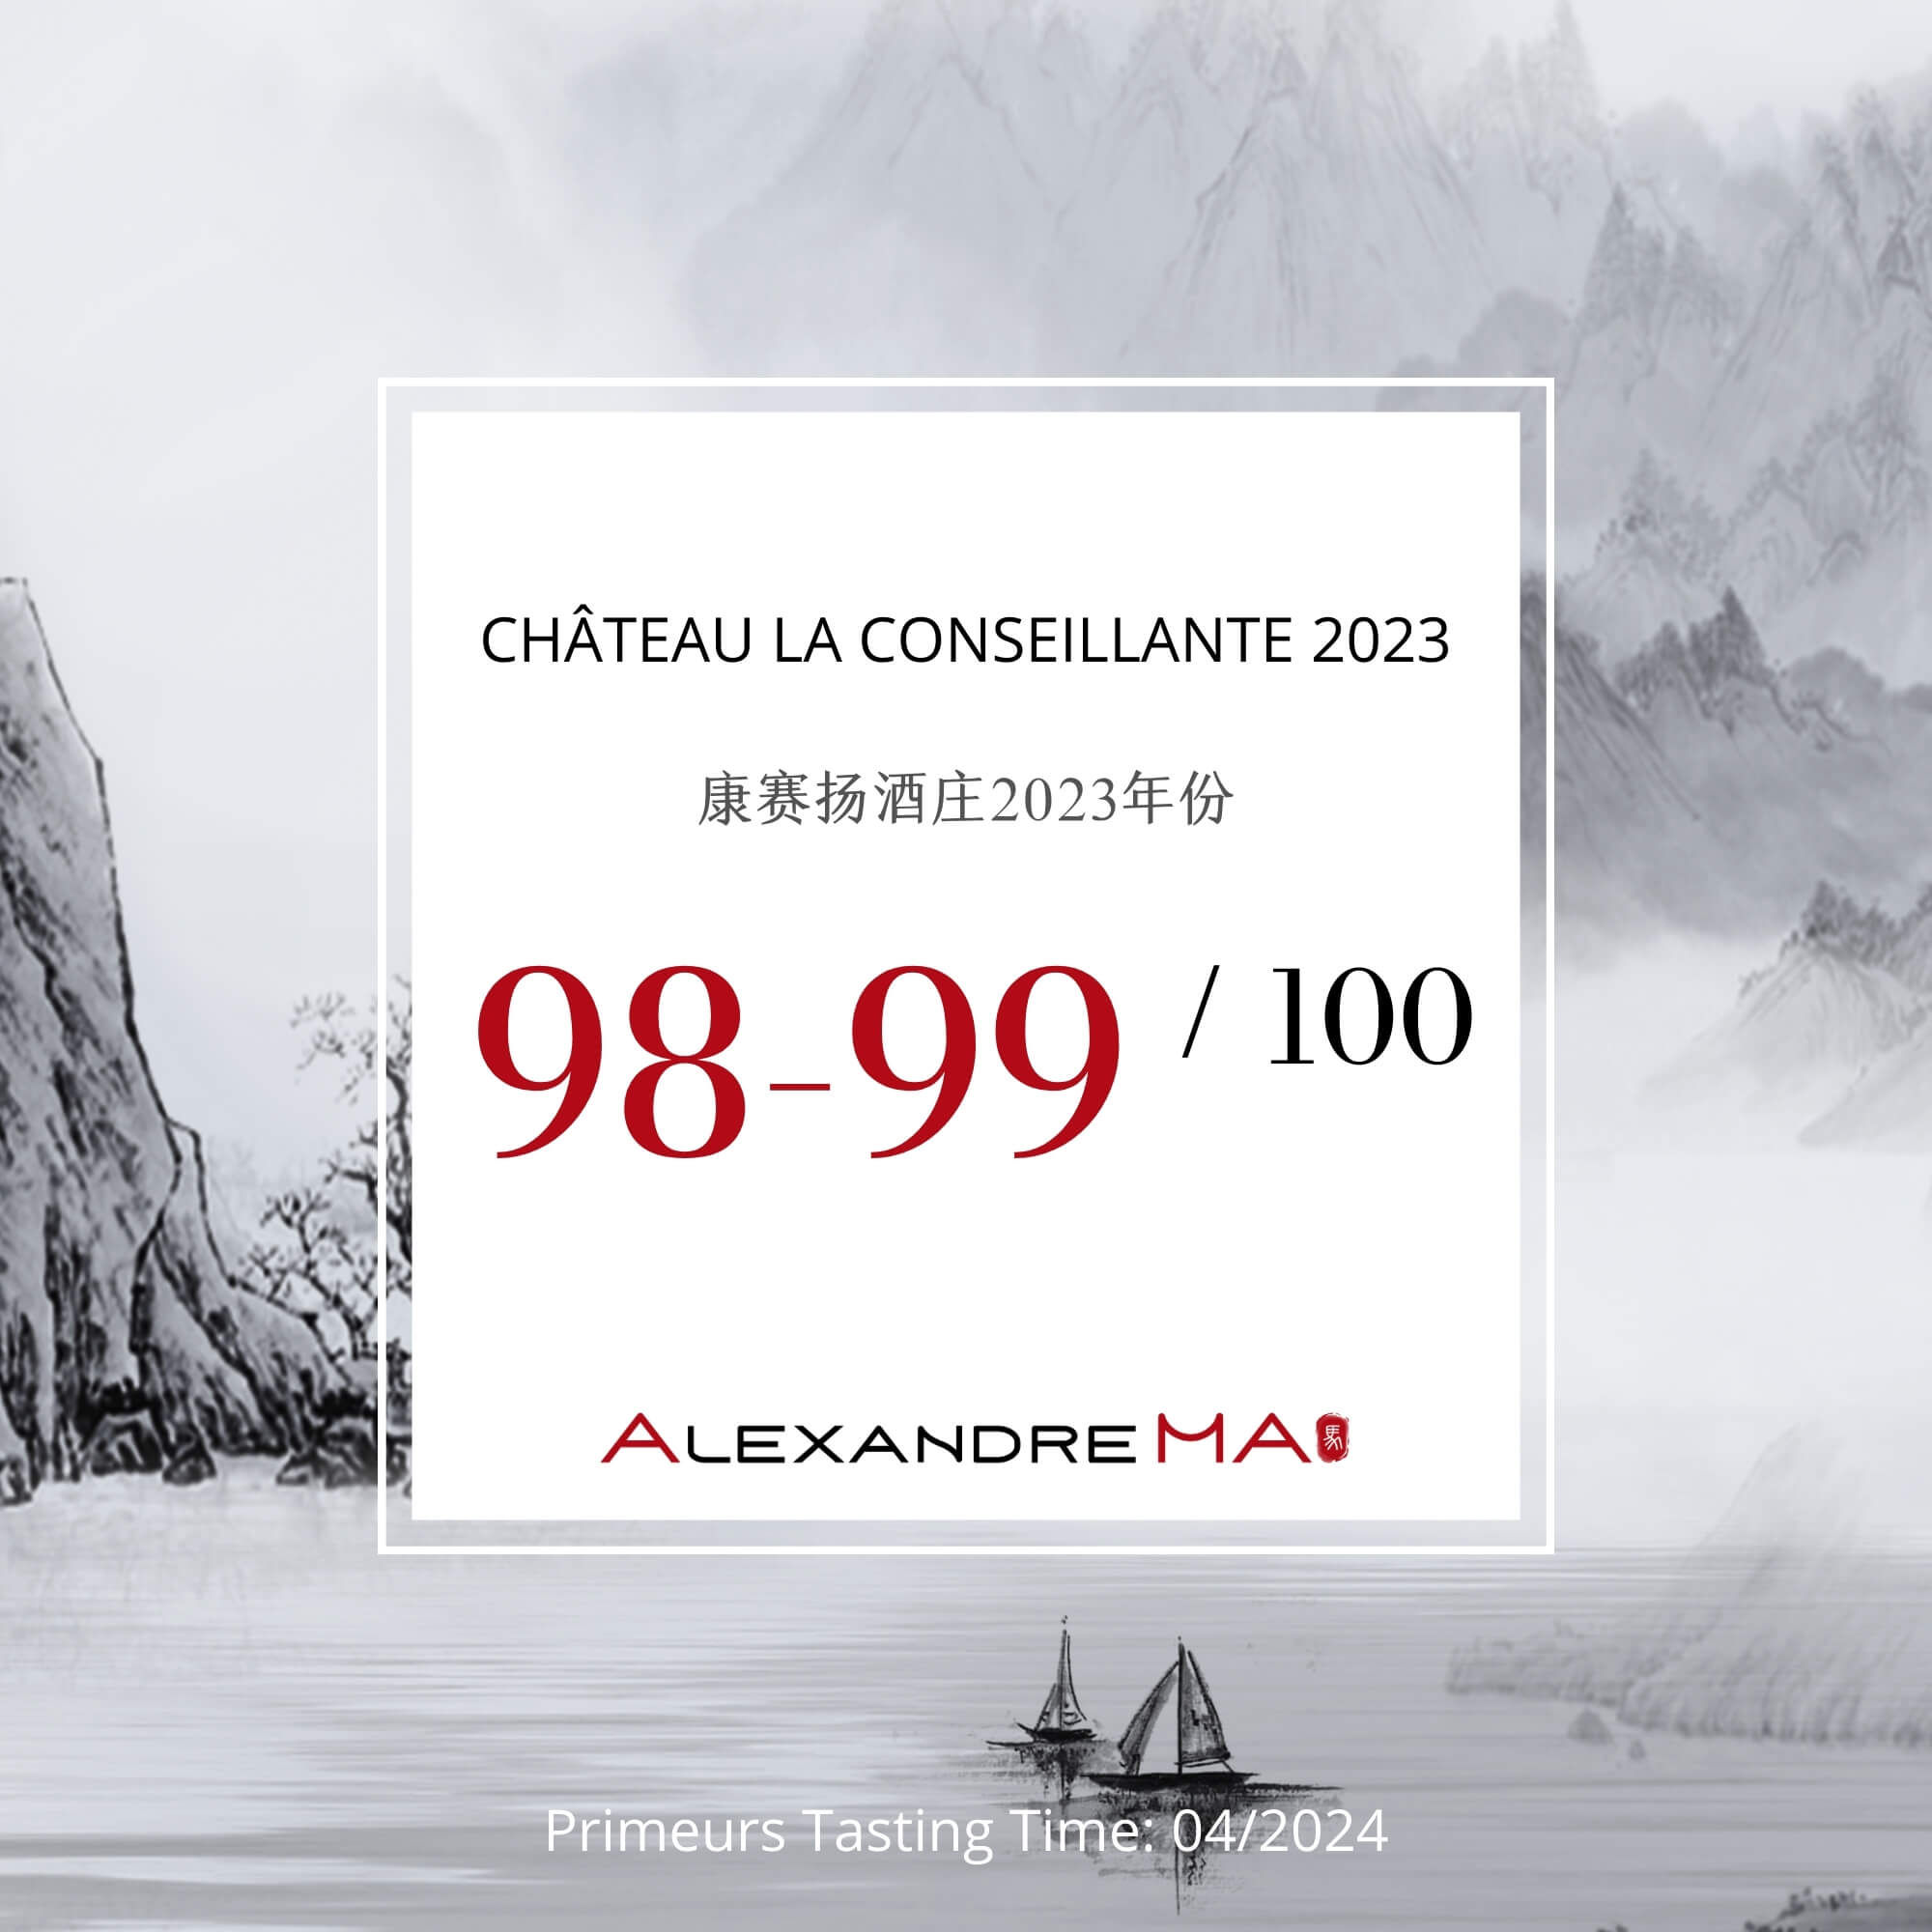 Château La Conseillante 2023 Primeurs - Alexandre MA